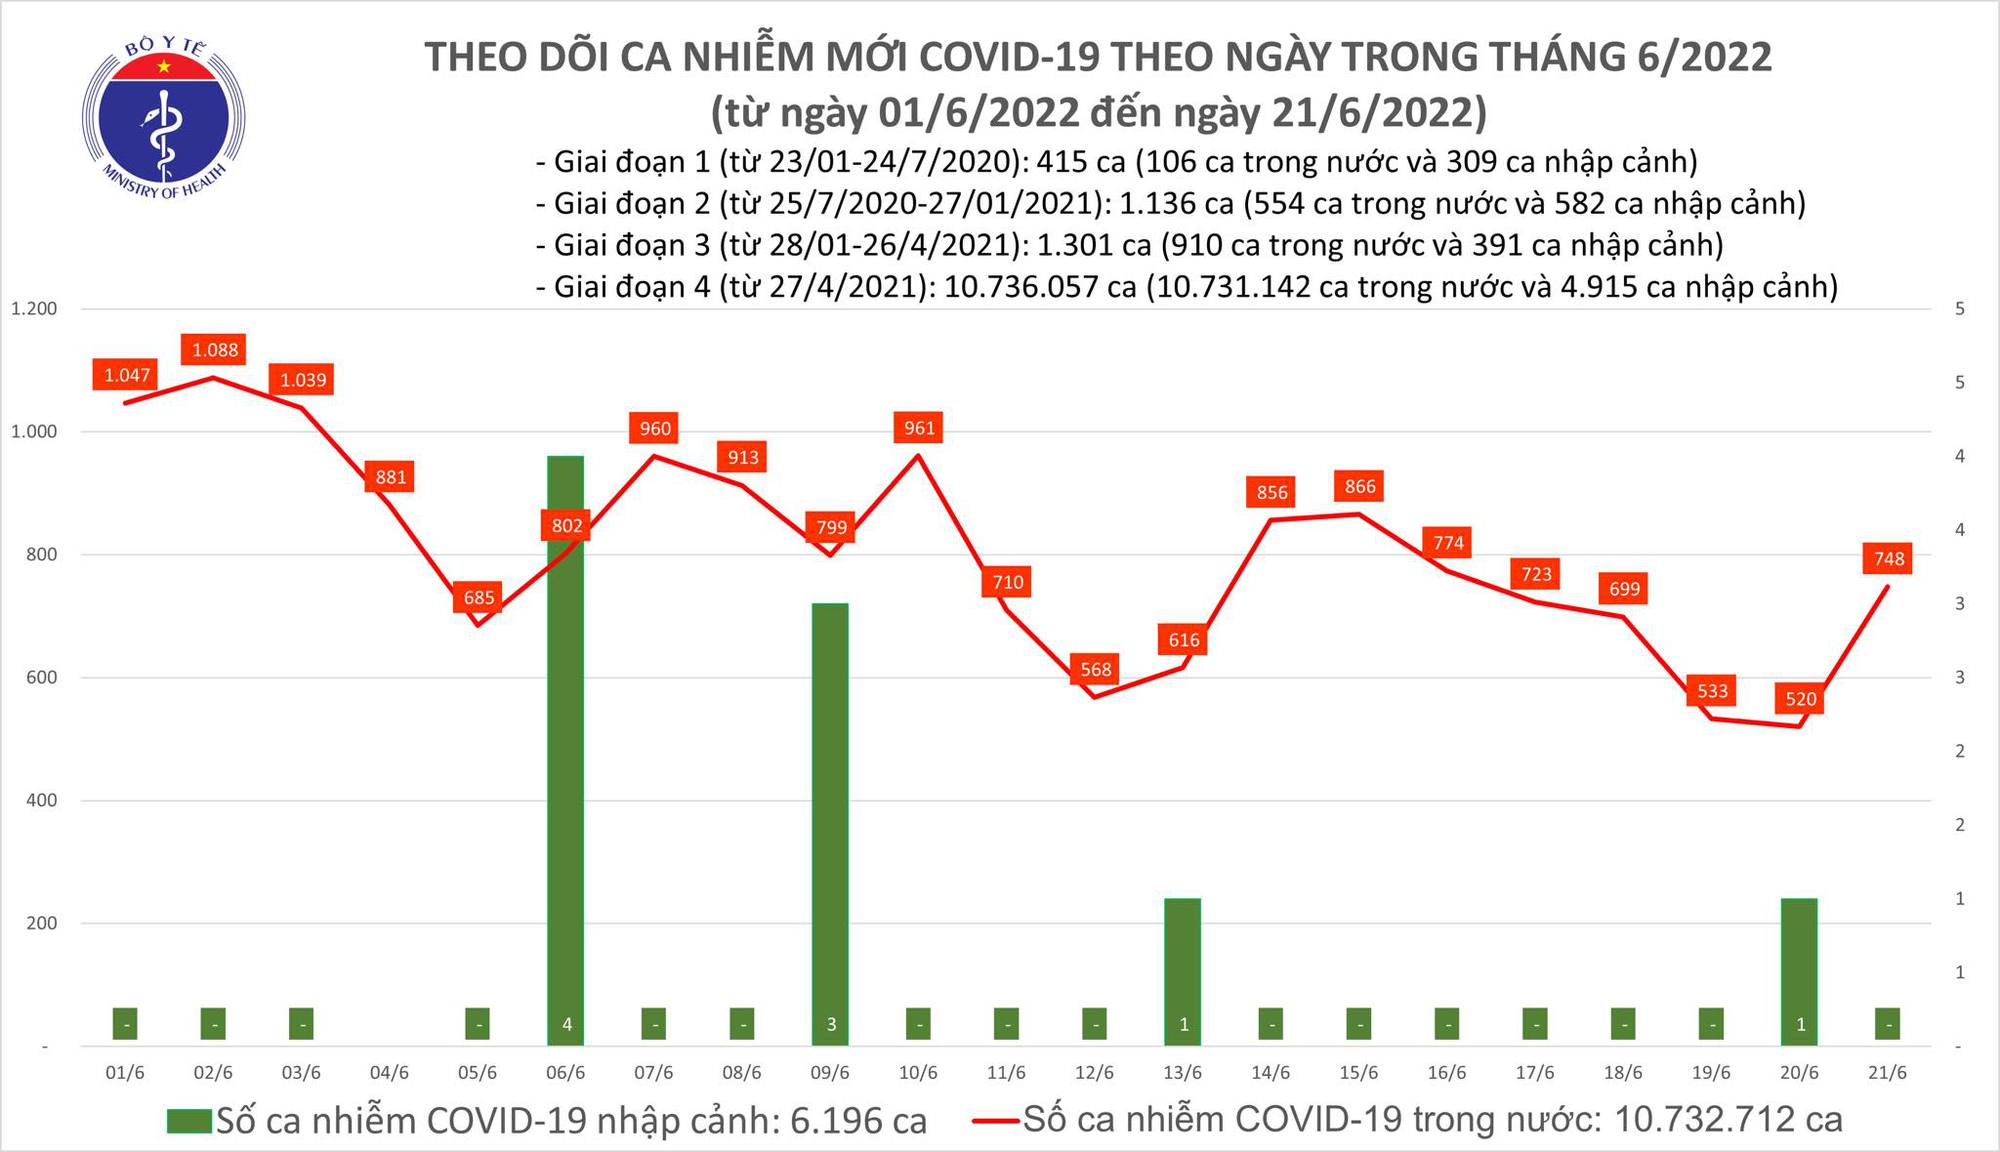 Ngày 21/6: Ca COVID-19 tăng lên 748; có 1 F0 tử vong tại Bến Tre-1